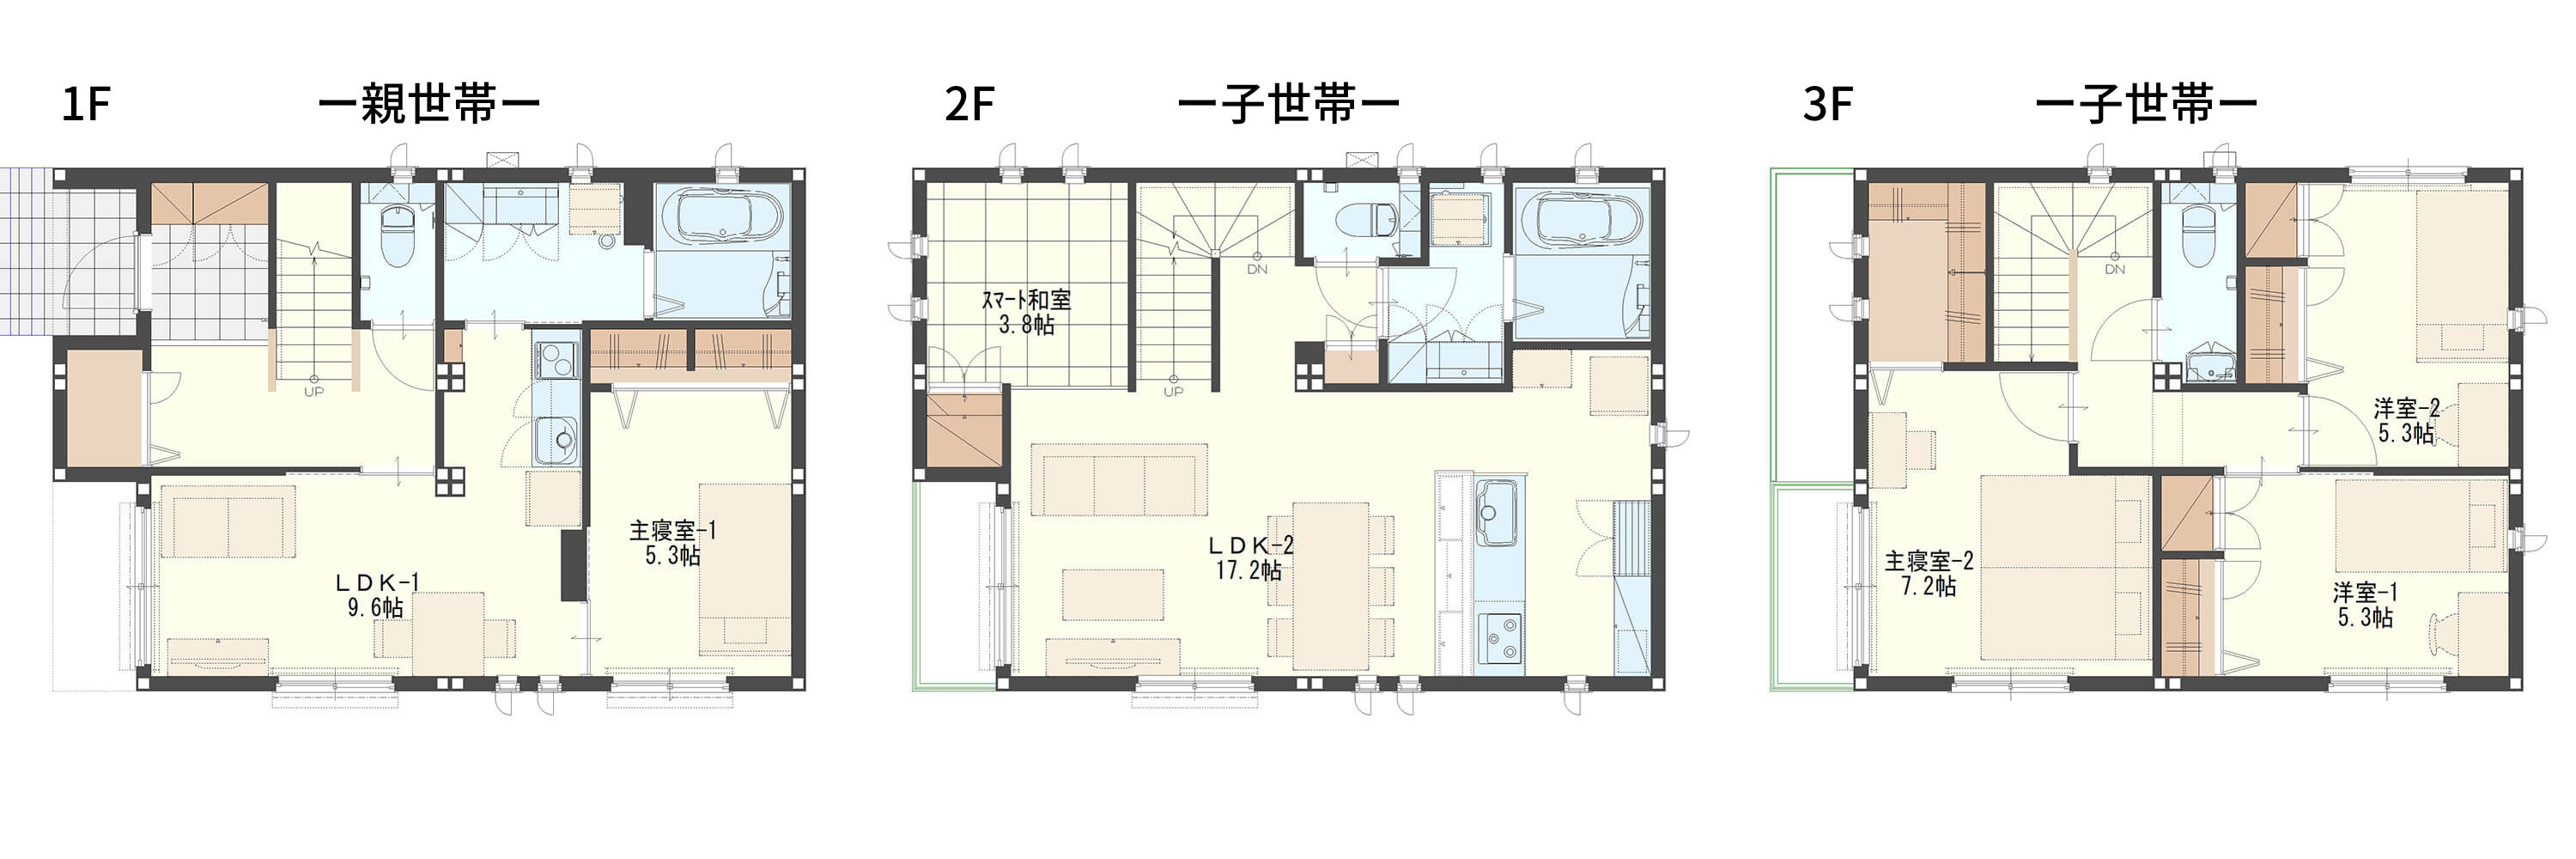 【間取り図あり】都市部の二世帯住宅で必要な延べ床面積